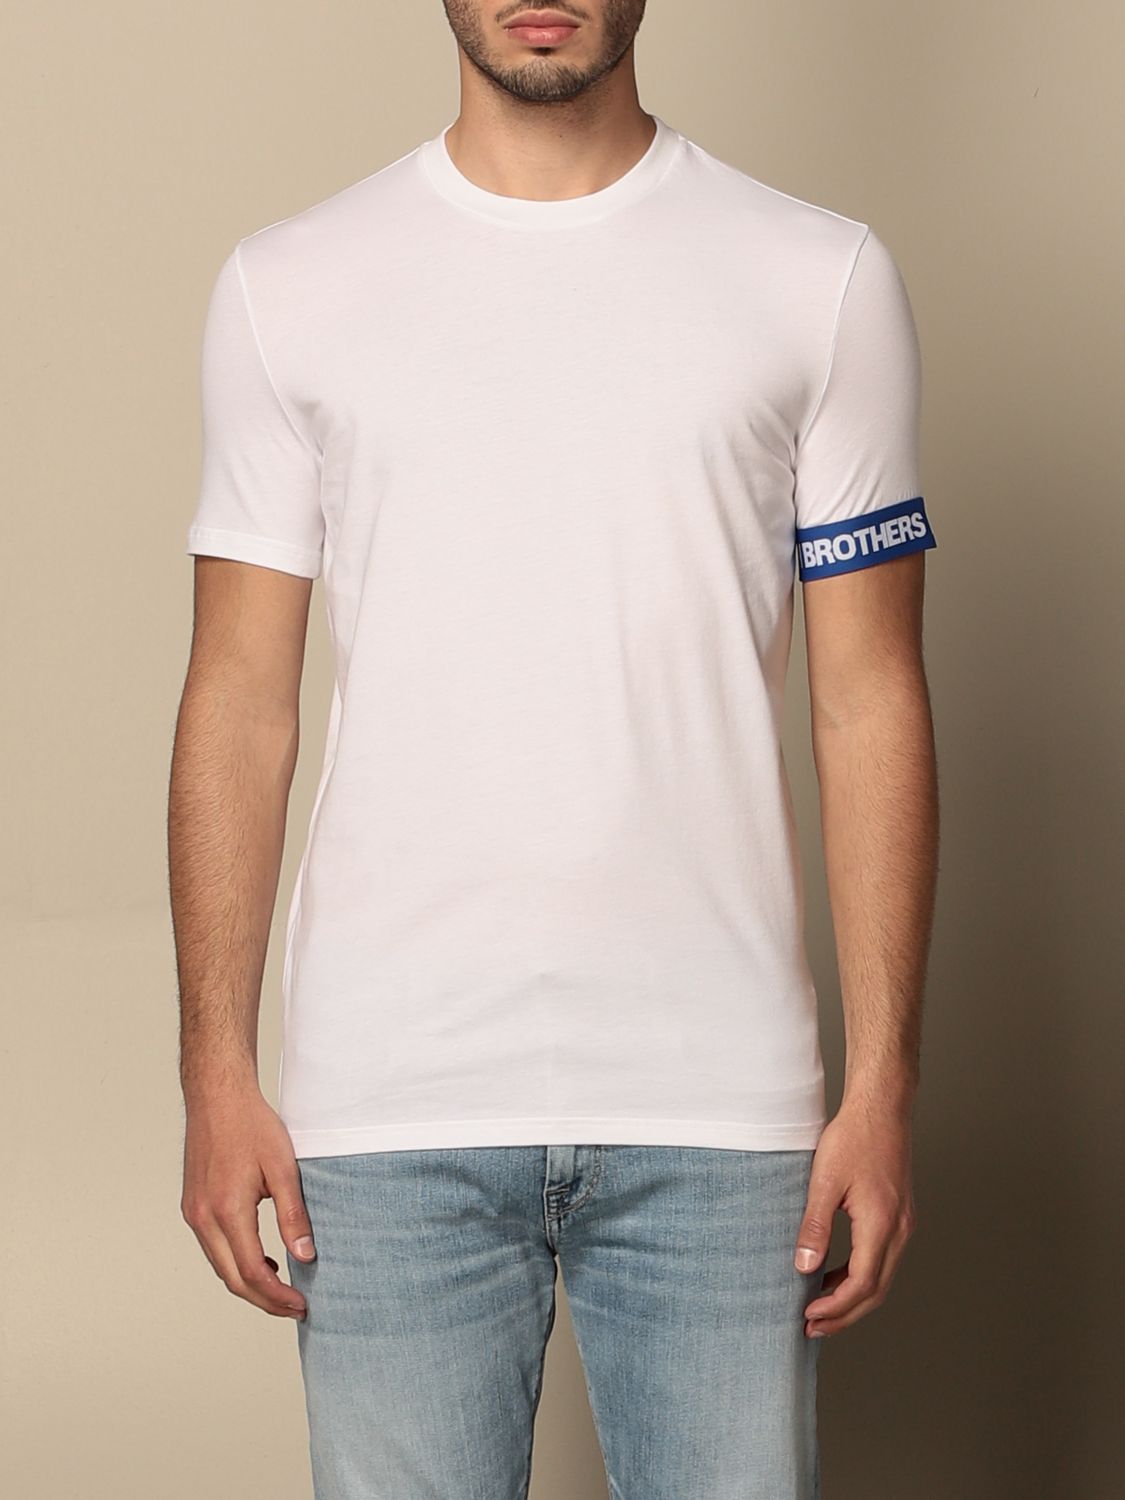 DSQUARED2: cotton T-shirt - White | Dsquared2 t-shirt D9M3S3550 online ...